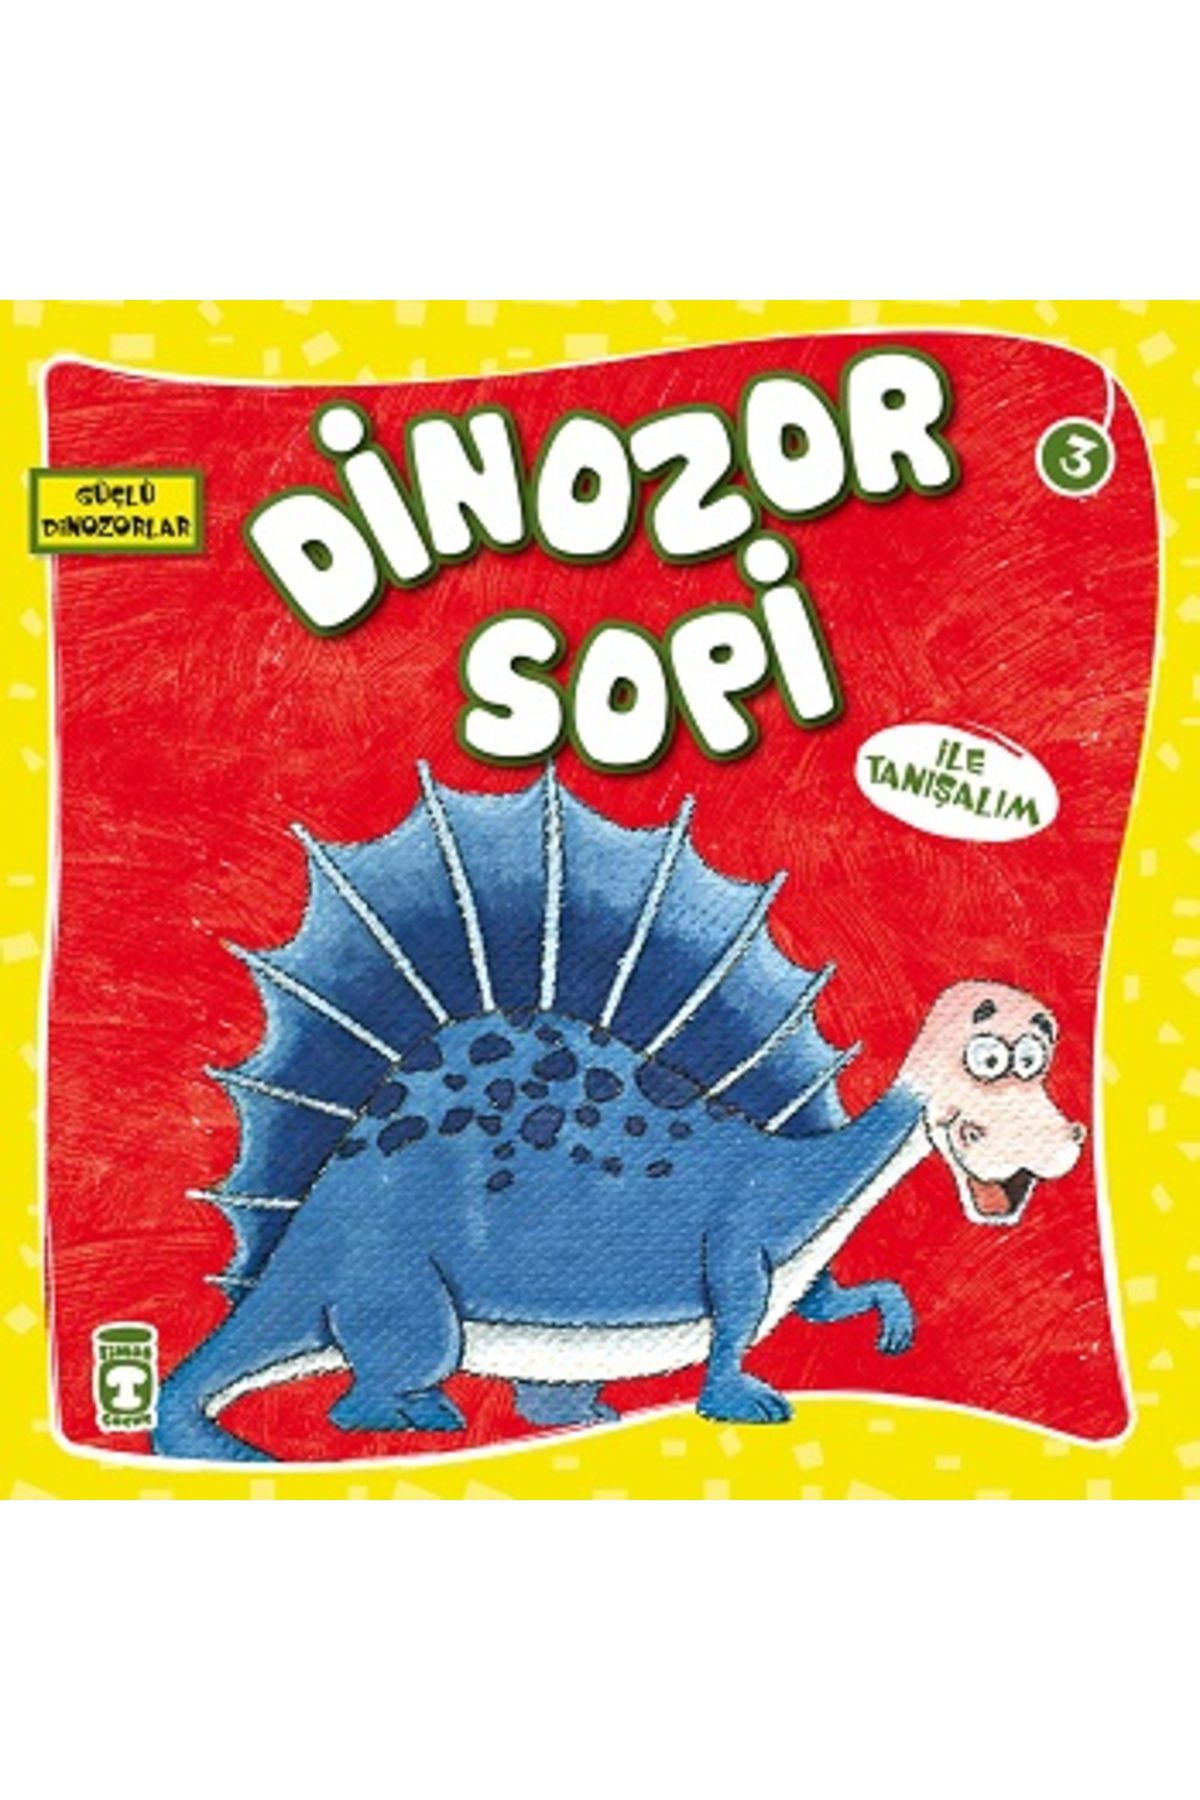 Timaş Çocuk Dinozor Sopi İle Tanışalım - Güçlü Dinozorlar